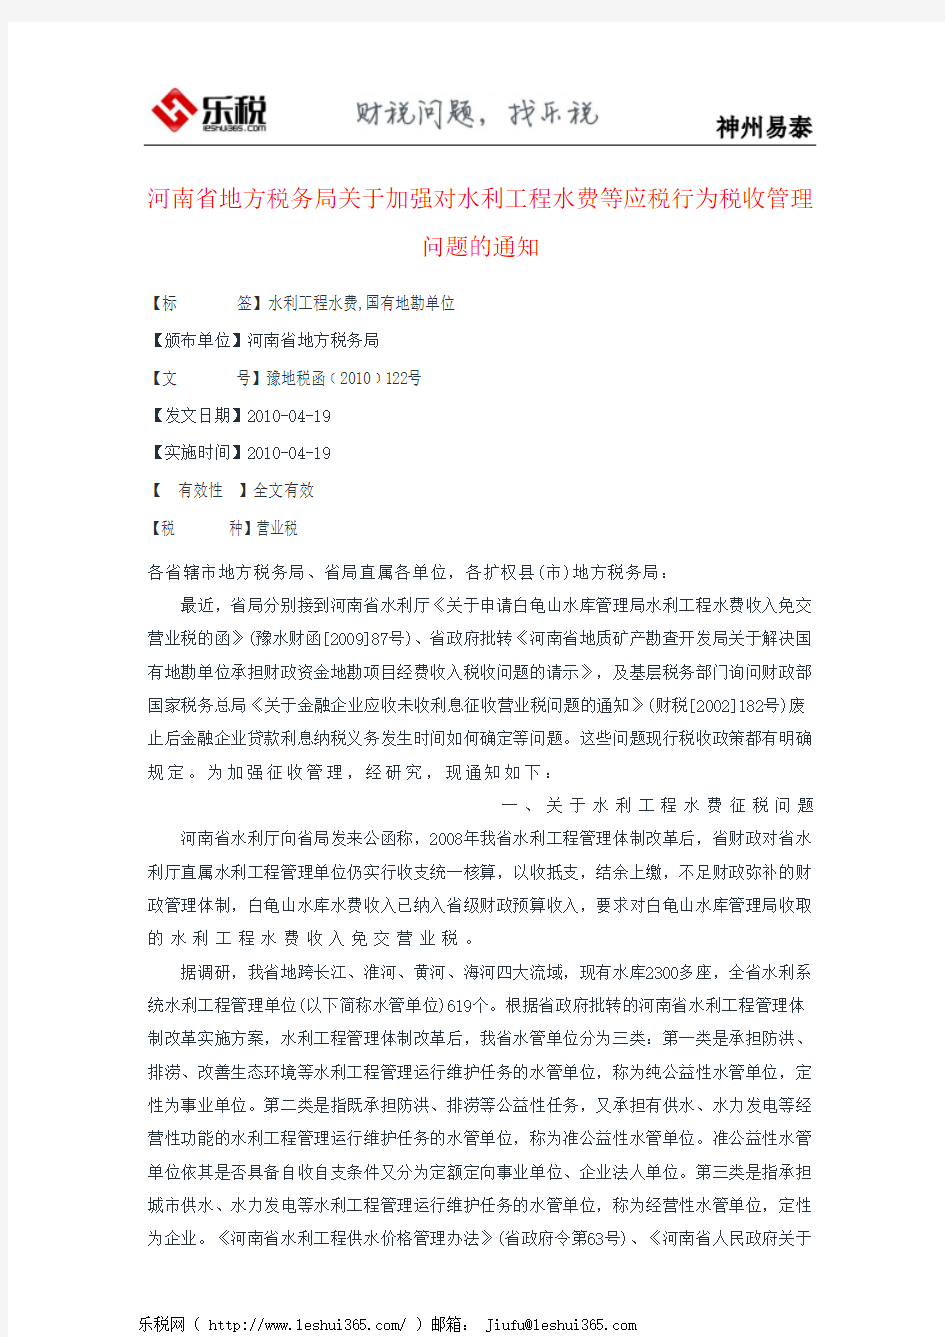 河南省地方税务局关于加强对水利工程水费等应税行为税收管理问题的通知